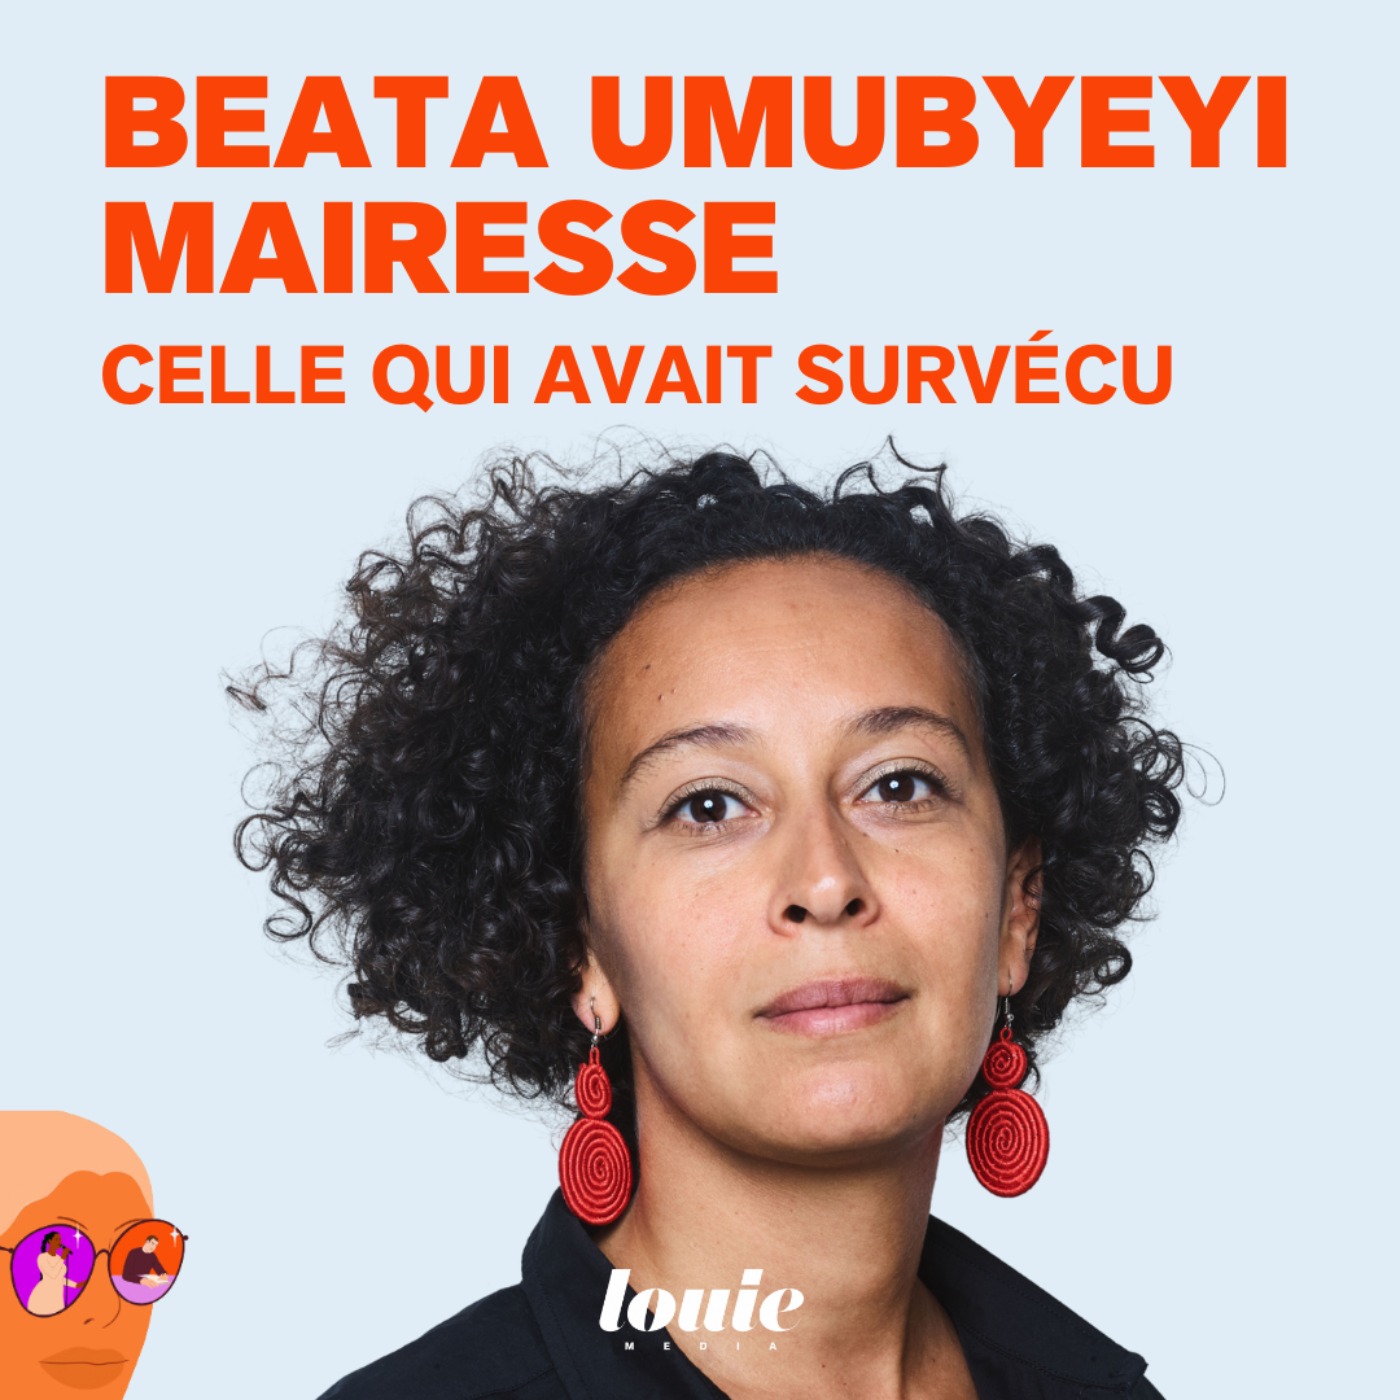 Beata Umubyeyi Mairesse, celle qui avait survécu